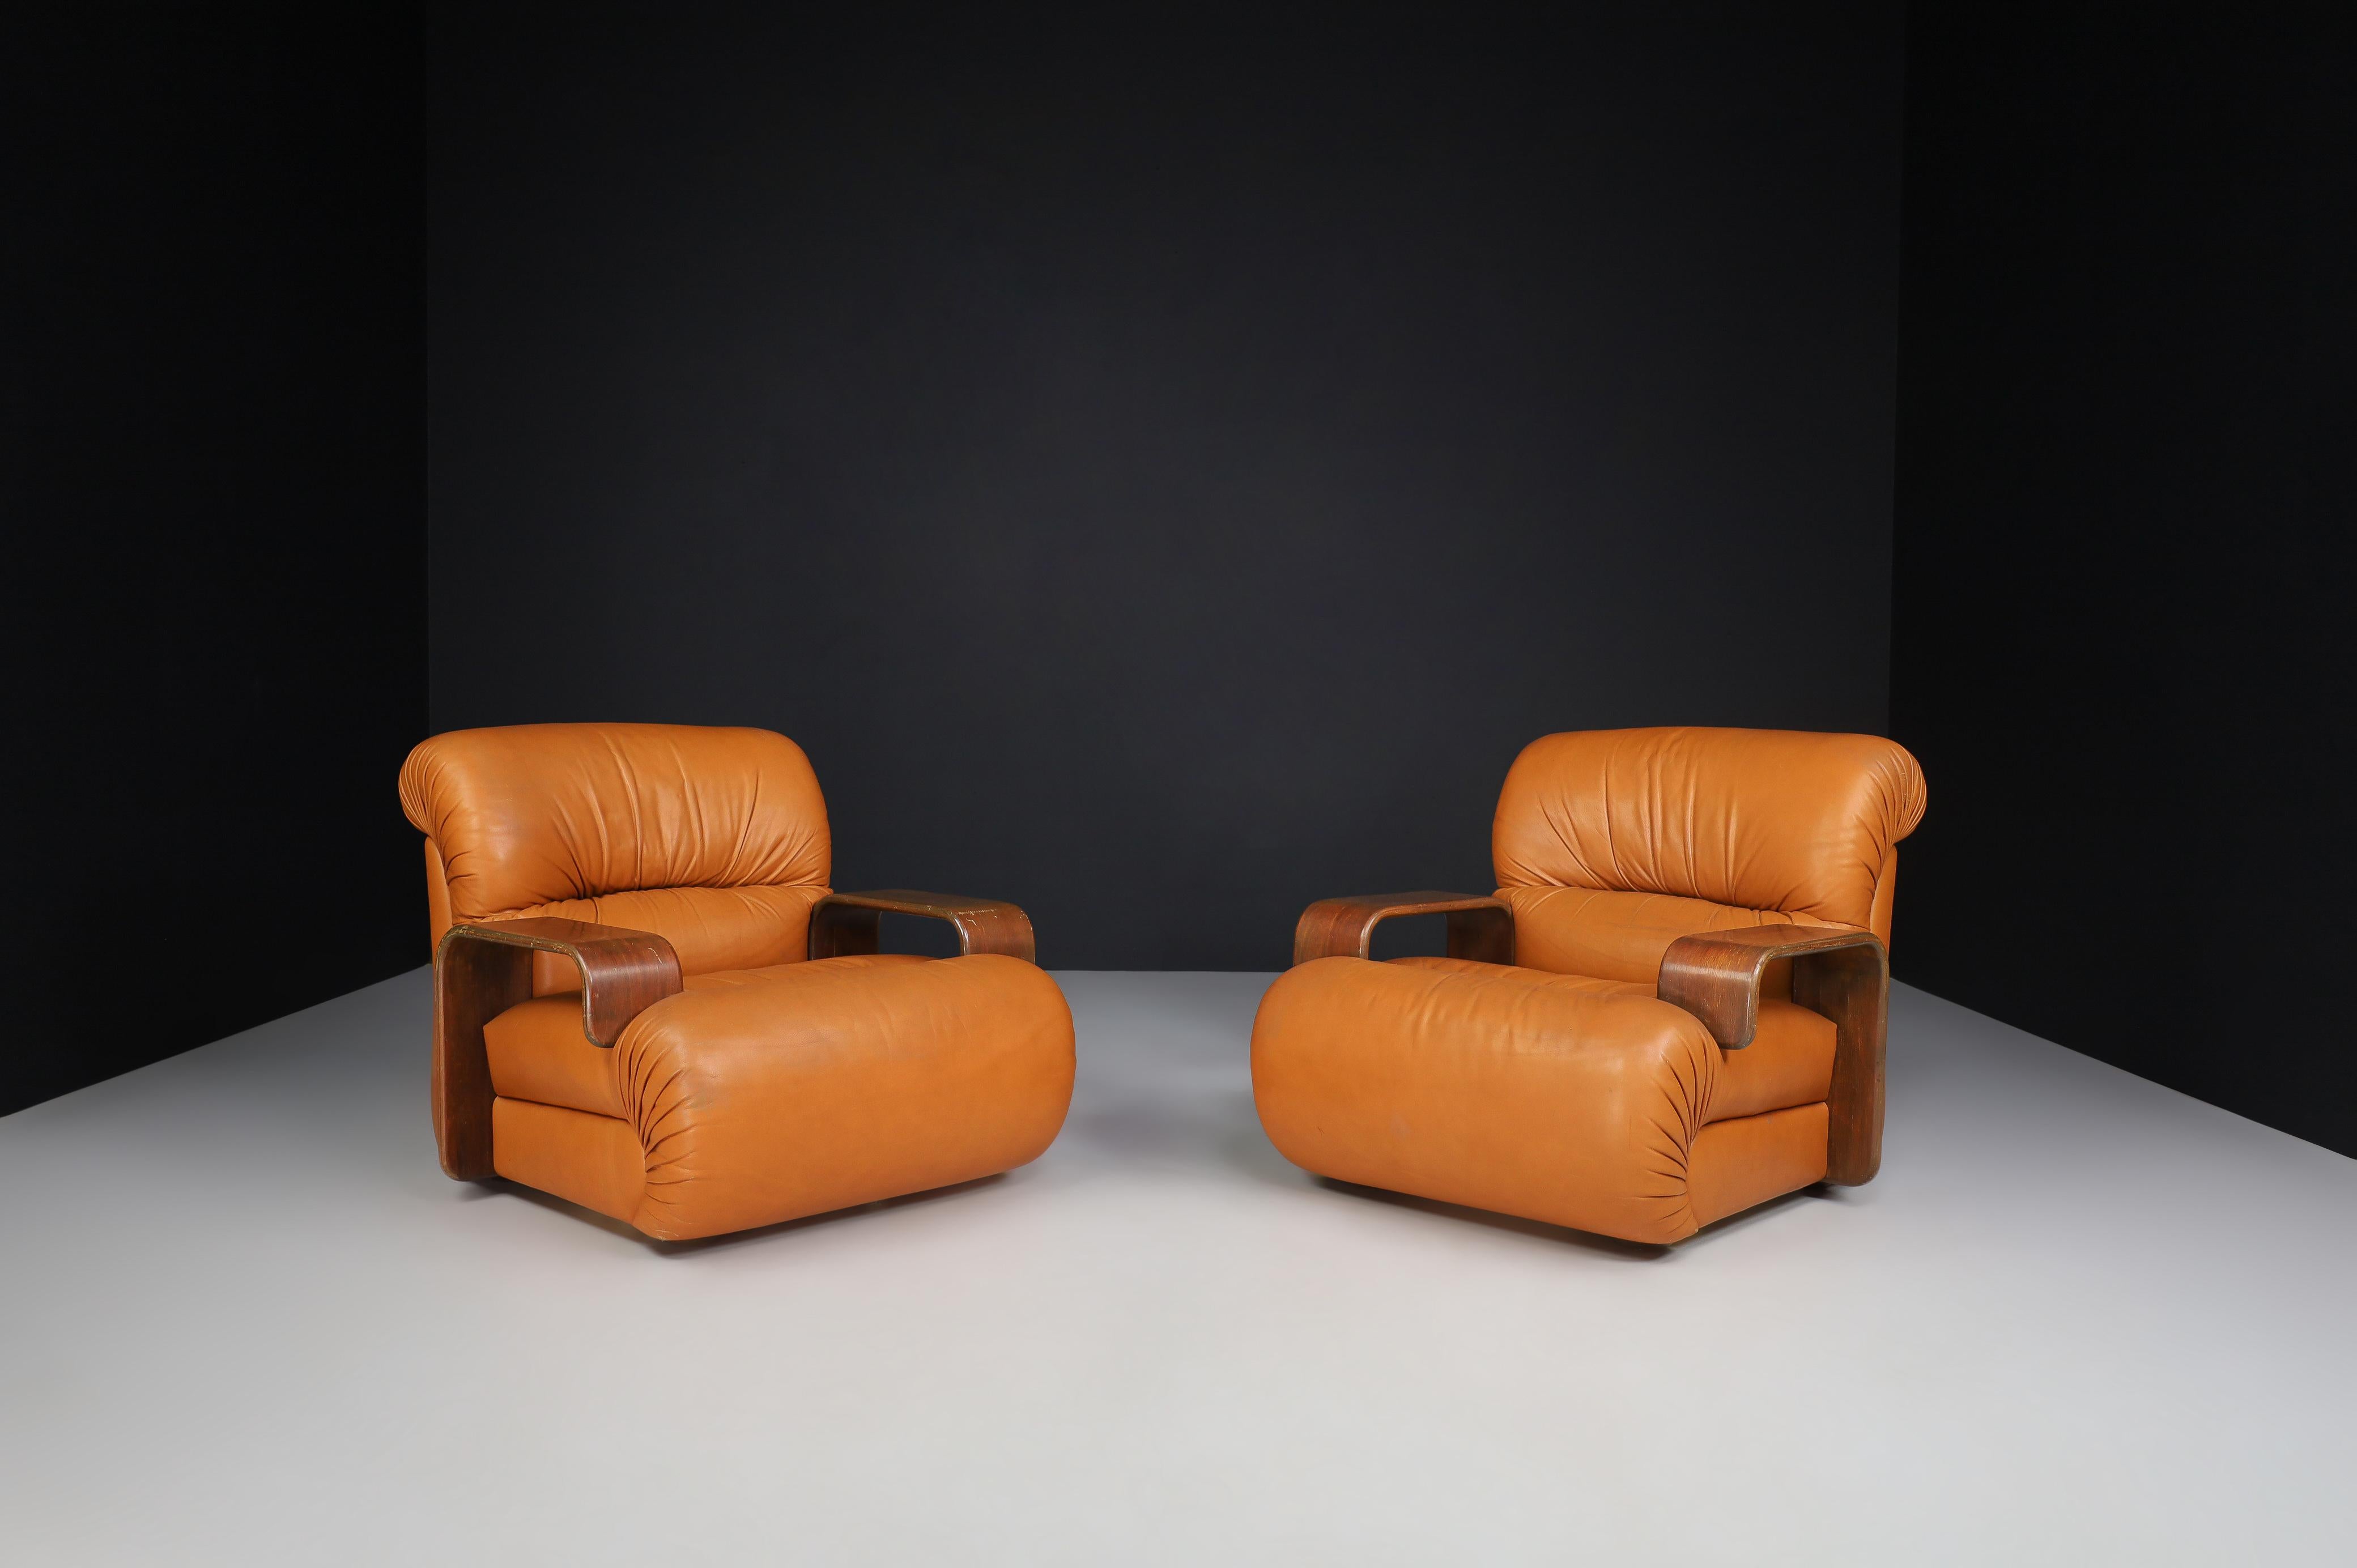 Chaises longues en bois de Bentwood et cuir cognac, Italie 1970 

Deux grands fauteuils de salon élégants, aux lignes et aux formes arrondies, vous invitent à vous asseoir et à vous détendre. Ils ont été conçus et produits en Italie dans les années